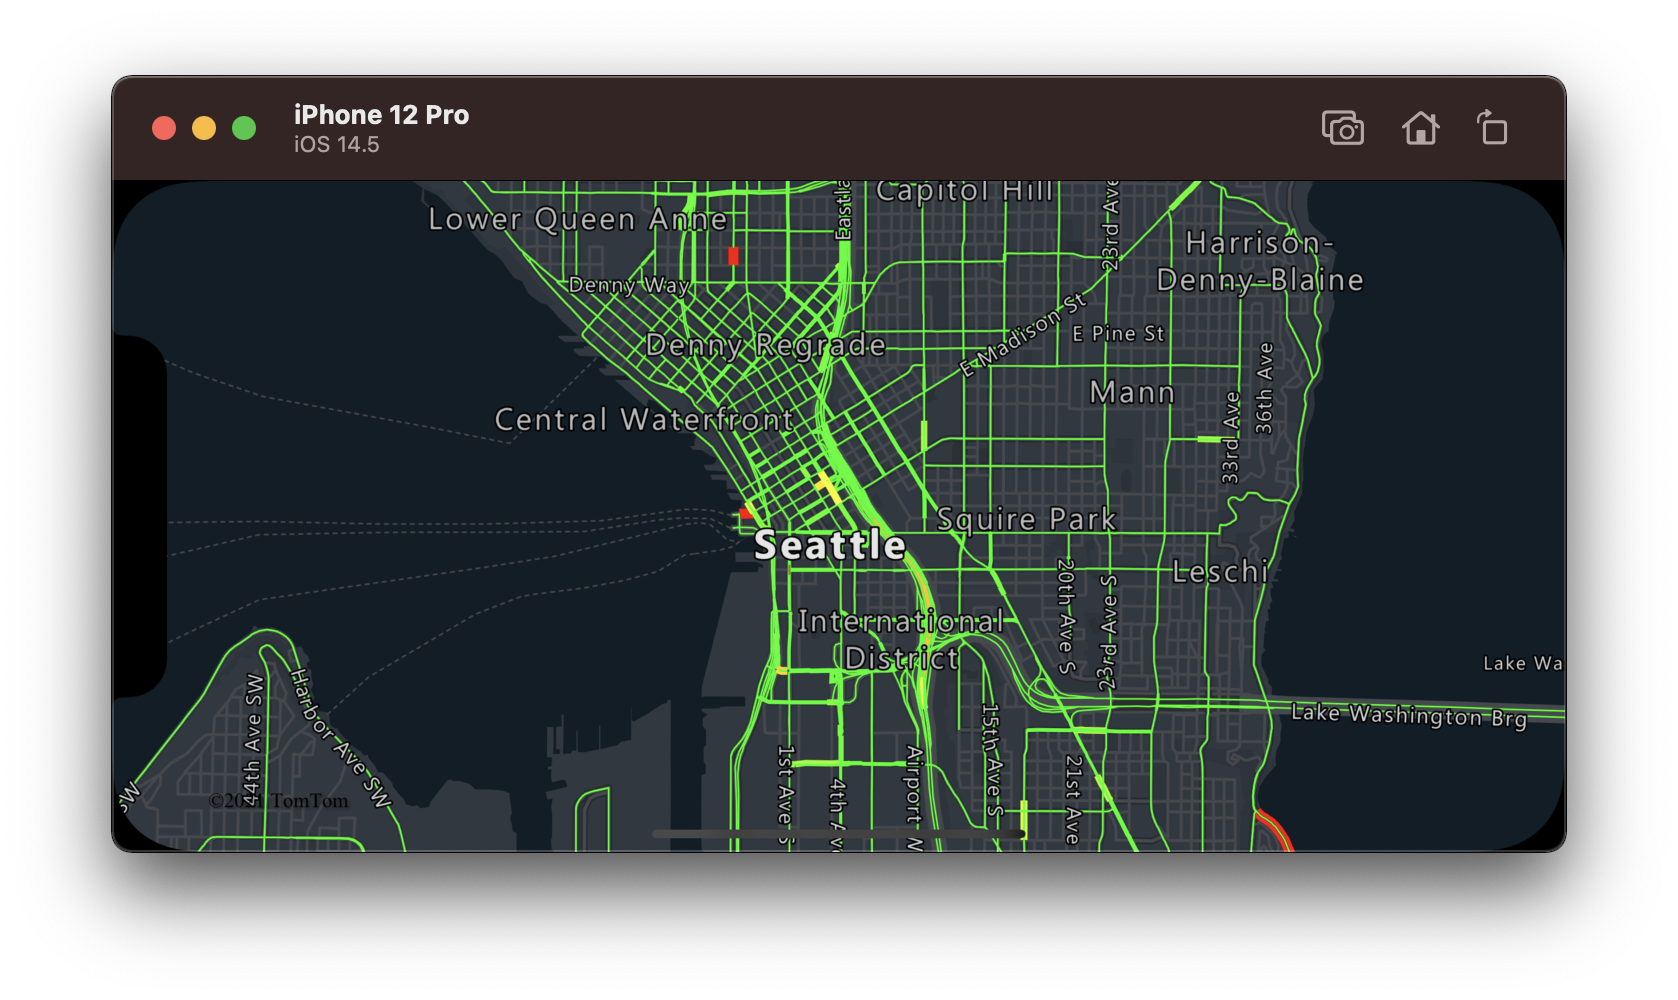 Captura de ecrã de um mapa com linhas rodoviárias codificadas por cores que mostram os níveis de fluxo de tráfego.